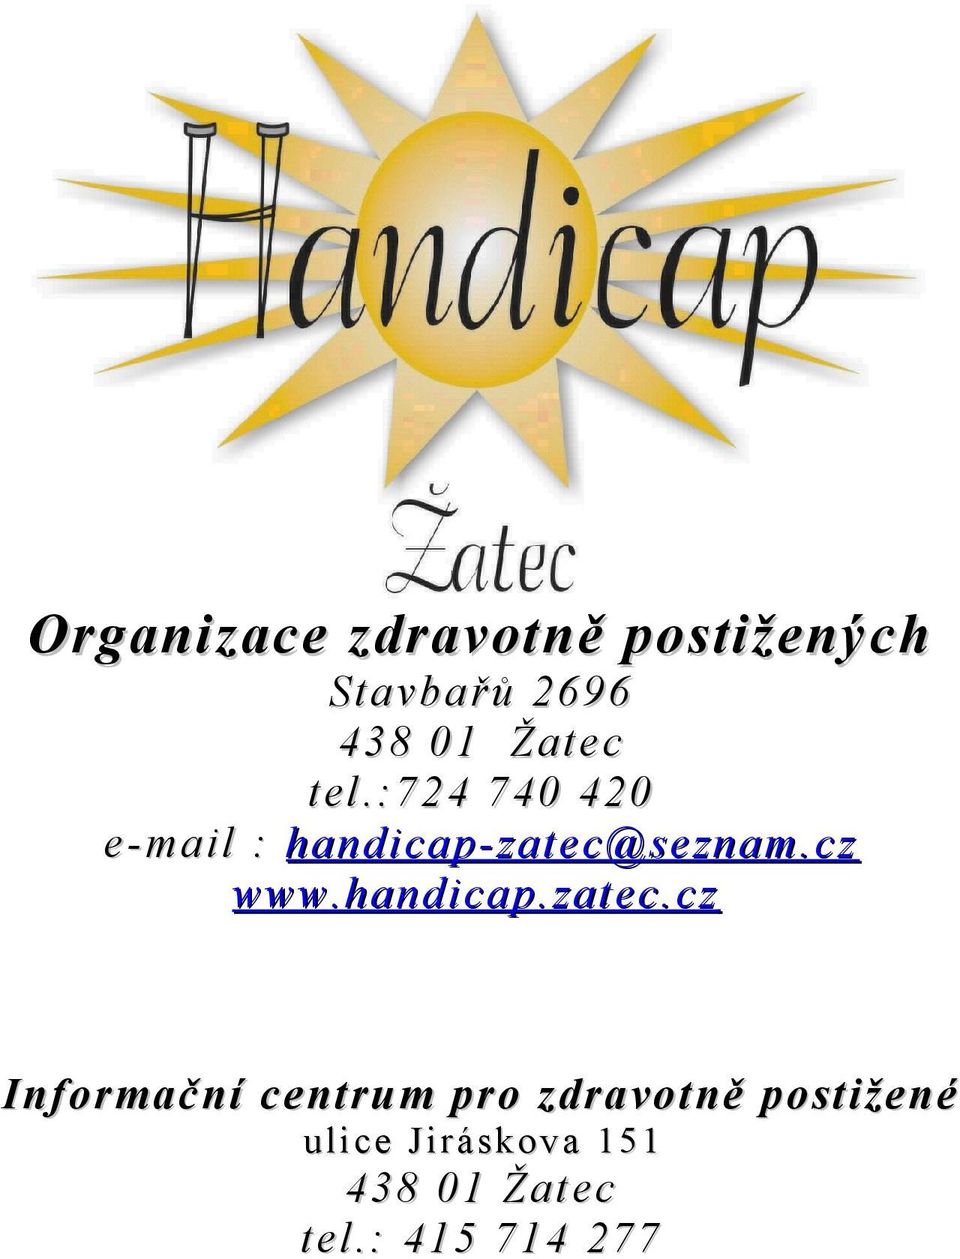 cz www.handicap.zatec.